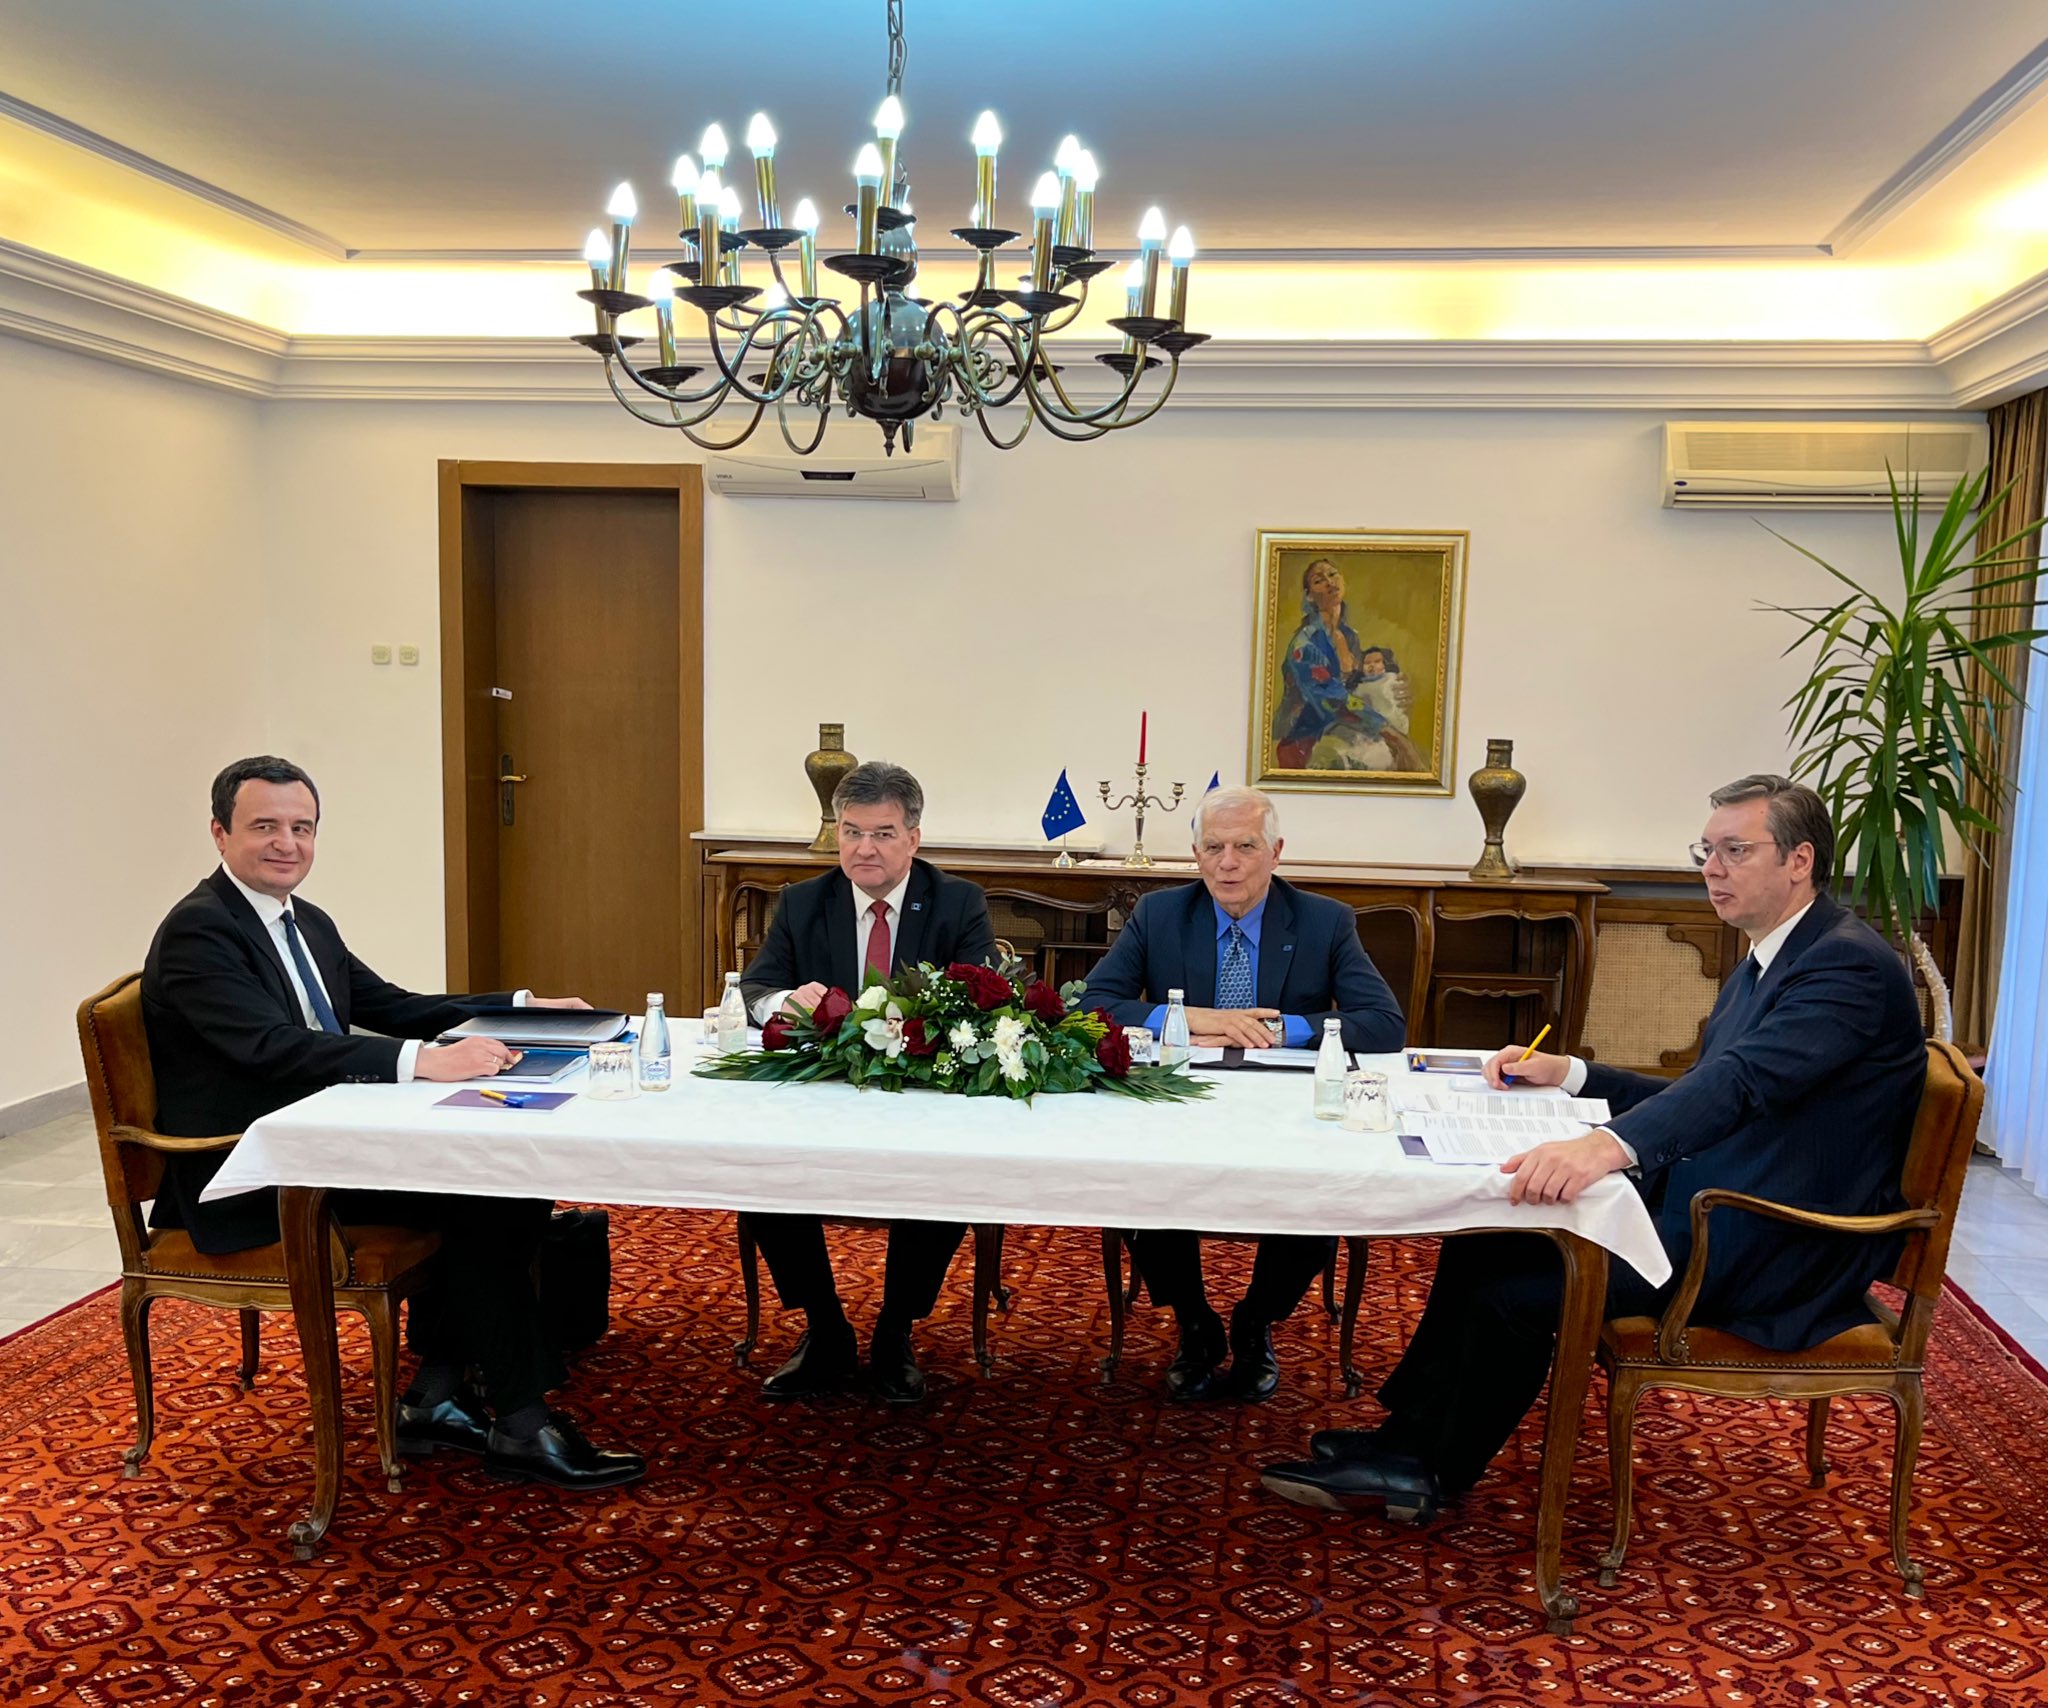 Srbija in Kosovo po maratonskem pogajanju dosegla &#8220;nekakšen dogovor&#8221;